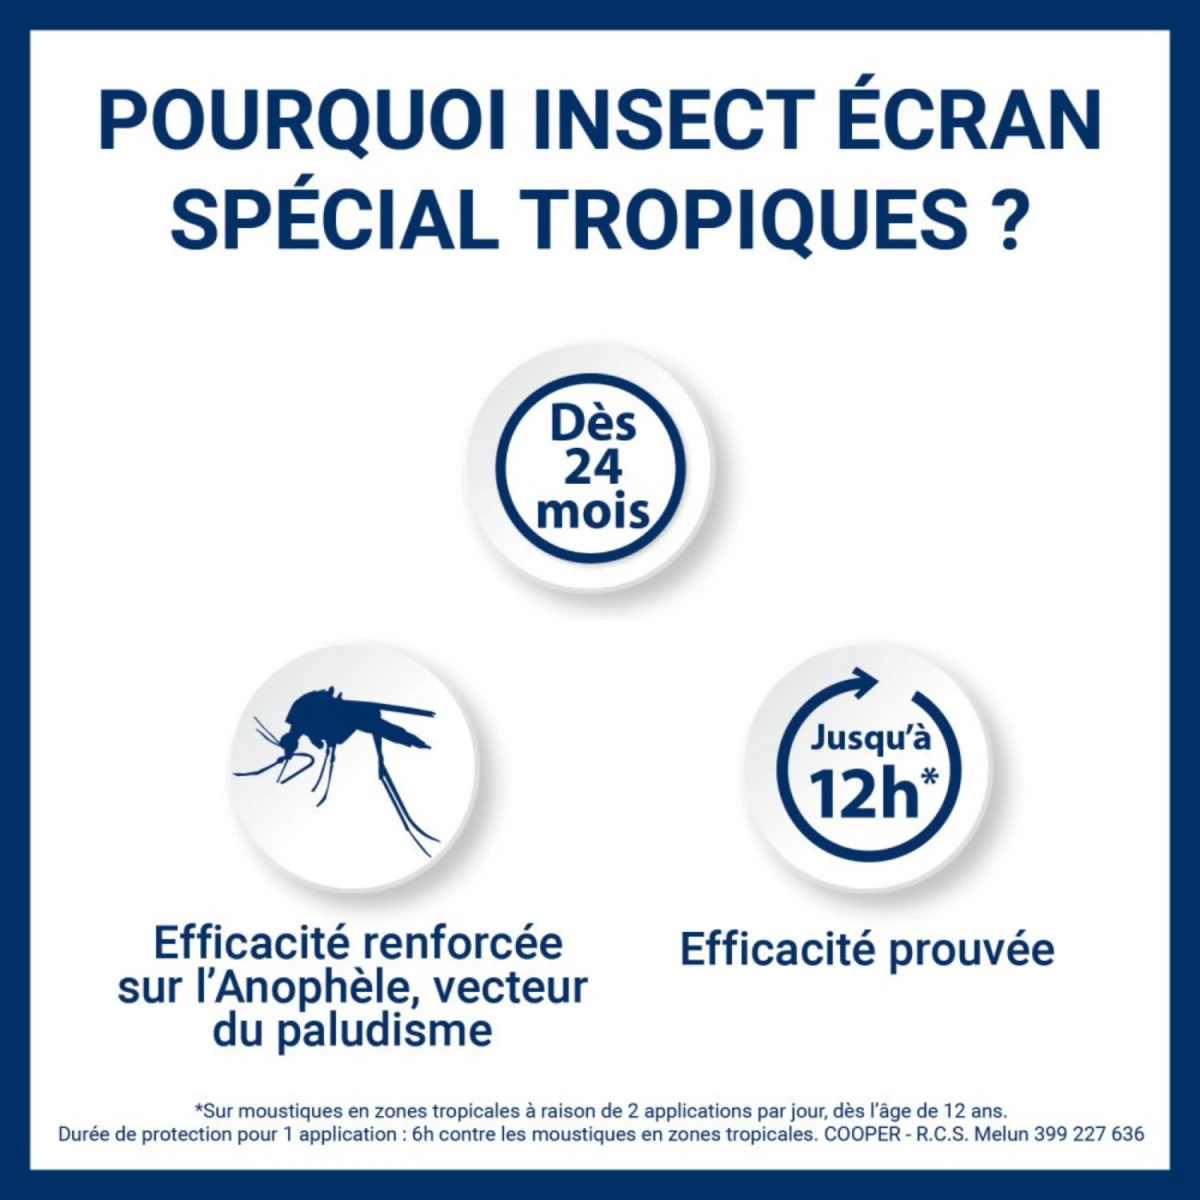 Insect Ecran - Zones Infestées - Anti-Moustiques - Dès 24 mois